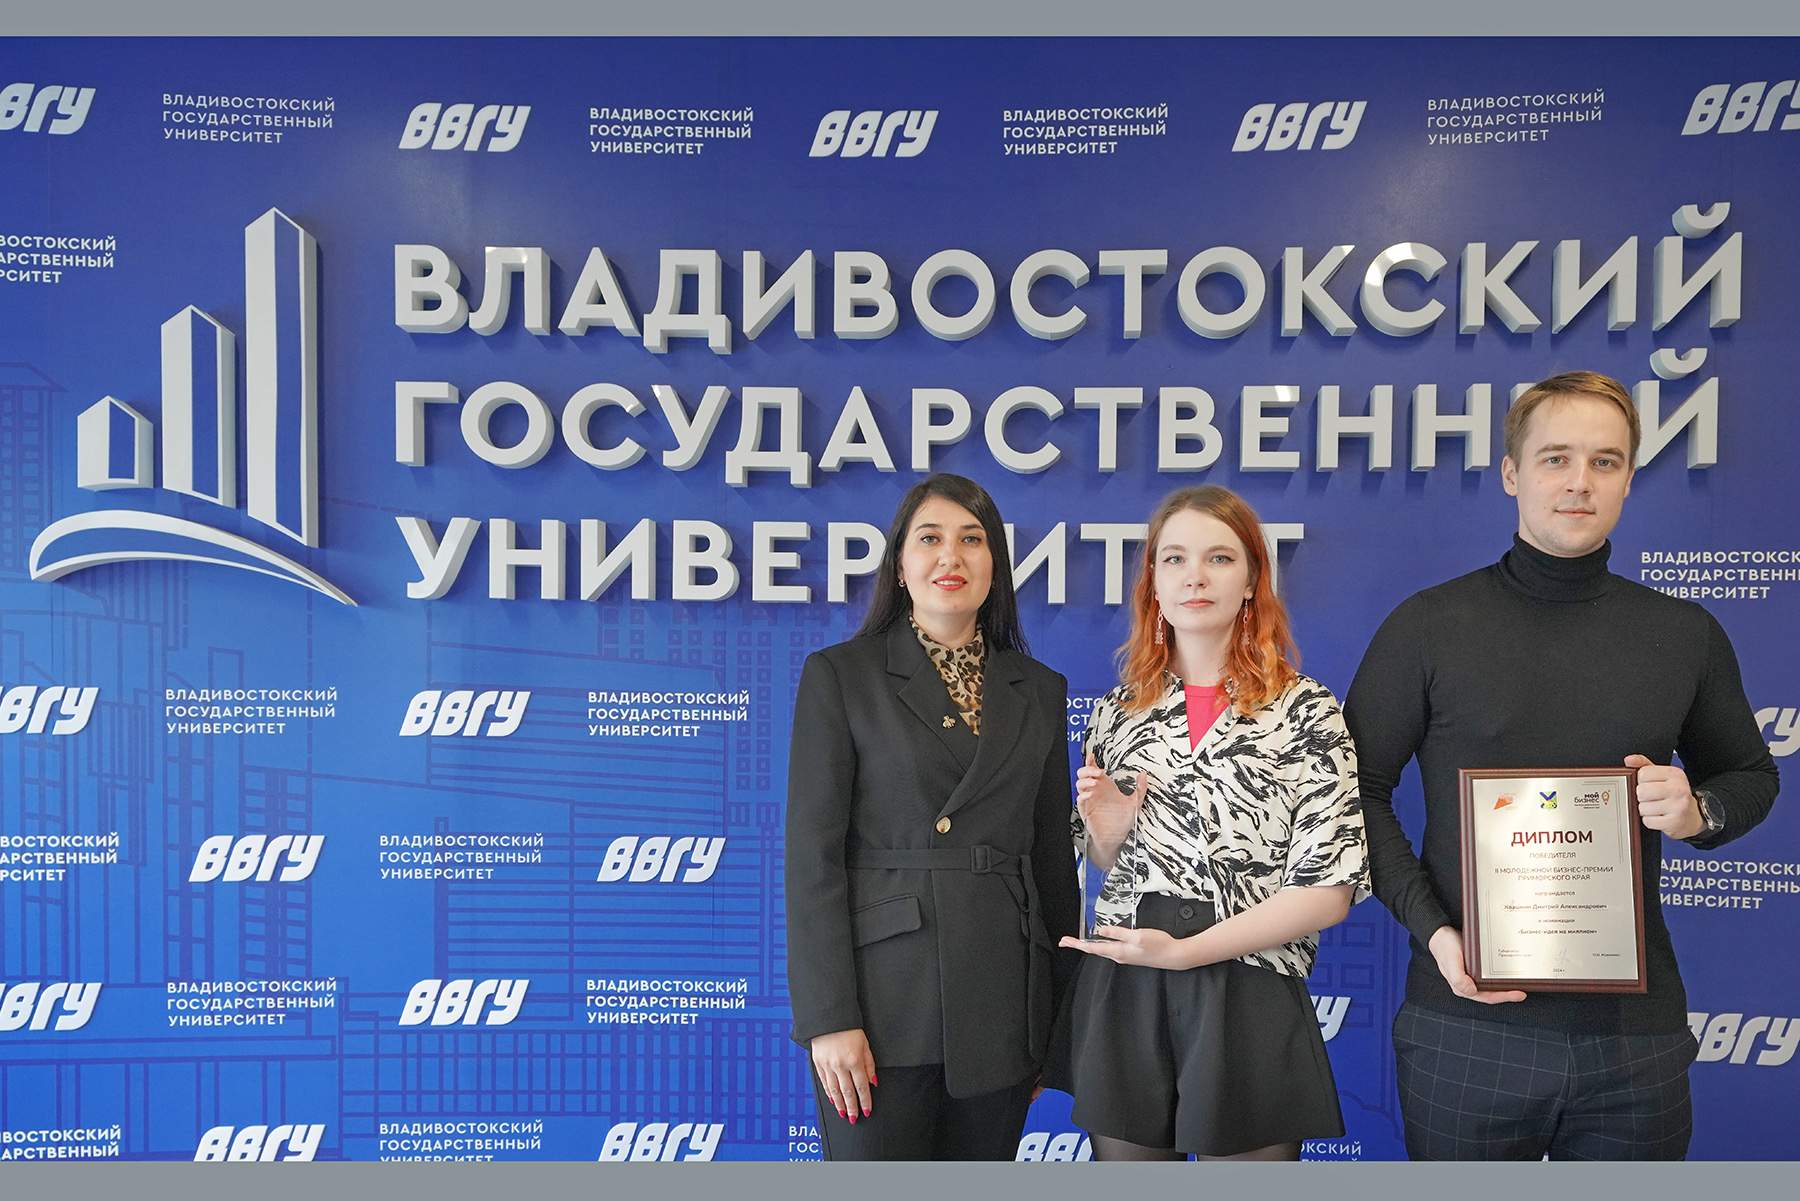 Бизнес-идея студентов ВВГУ признана лучшей в региональном конкурсе